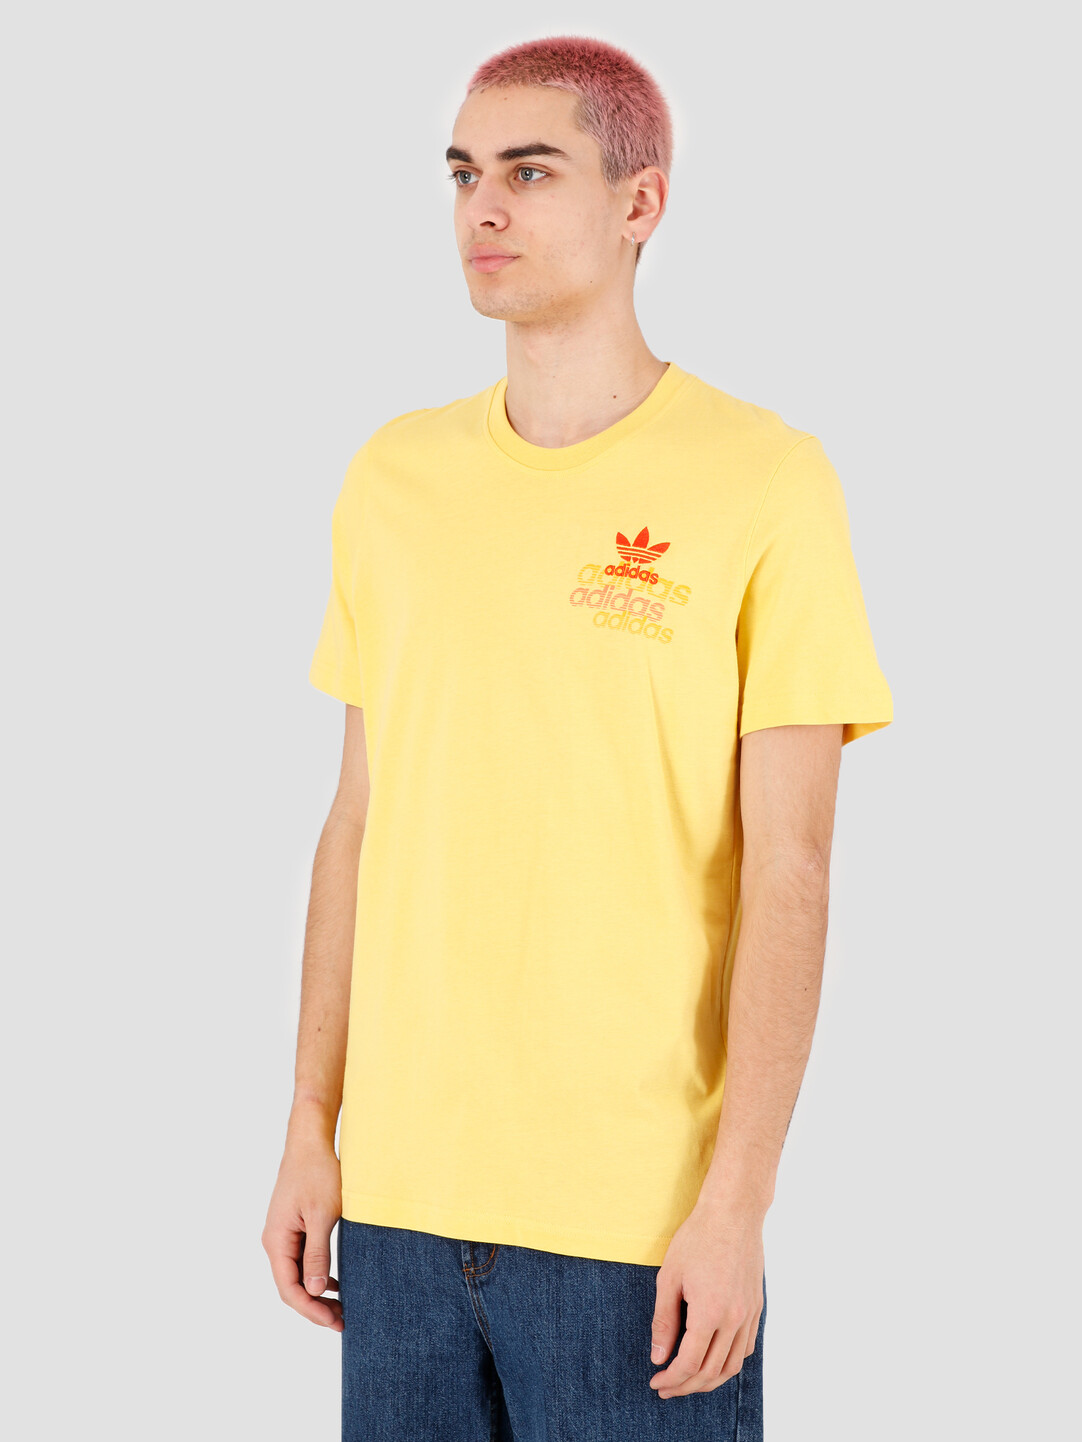 adidas yellow tshirt